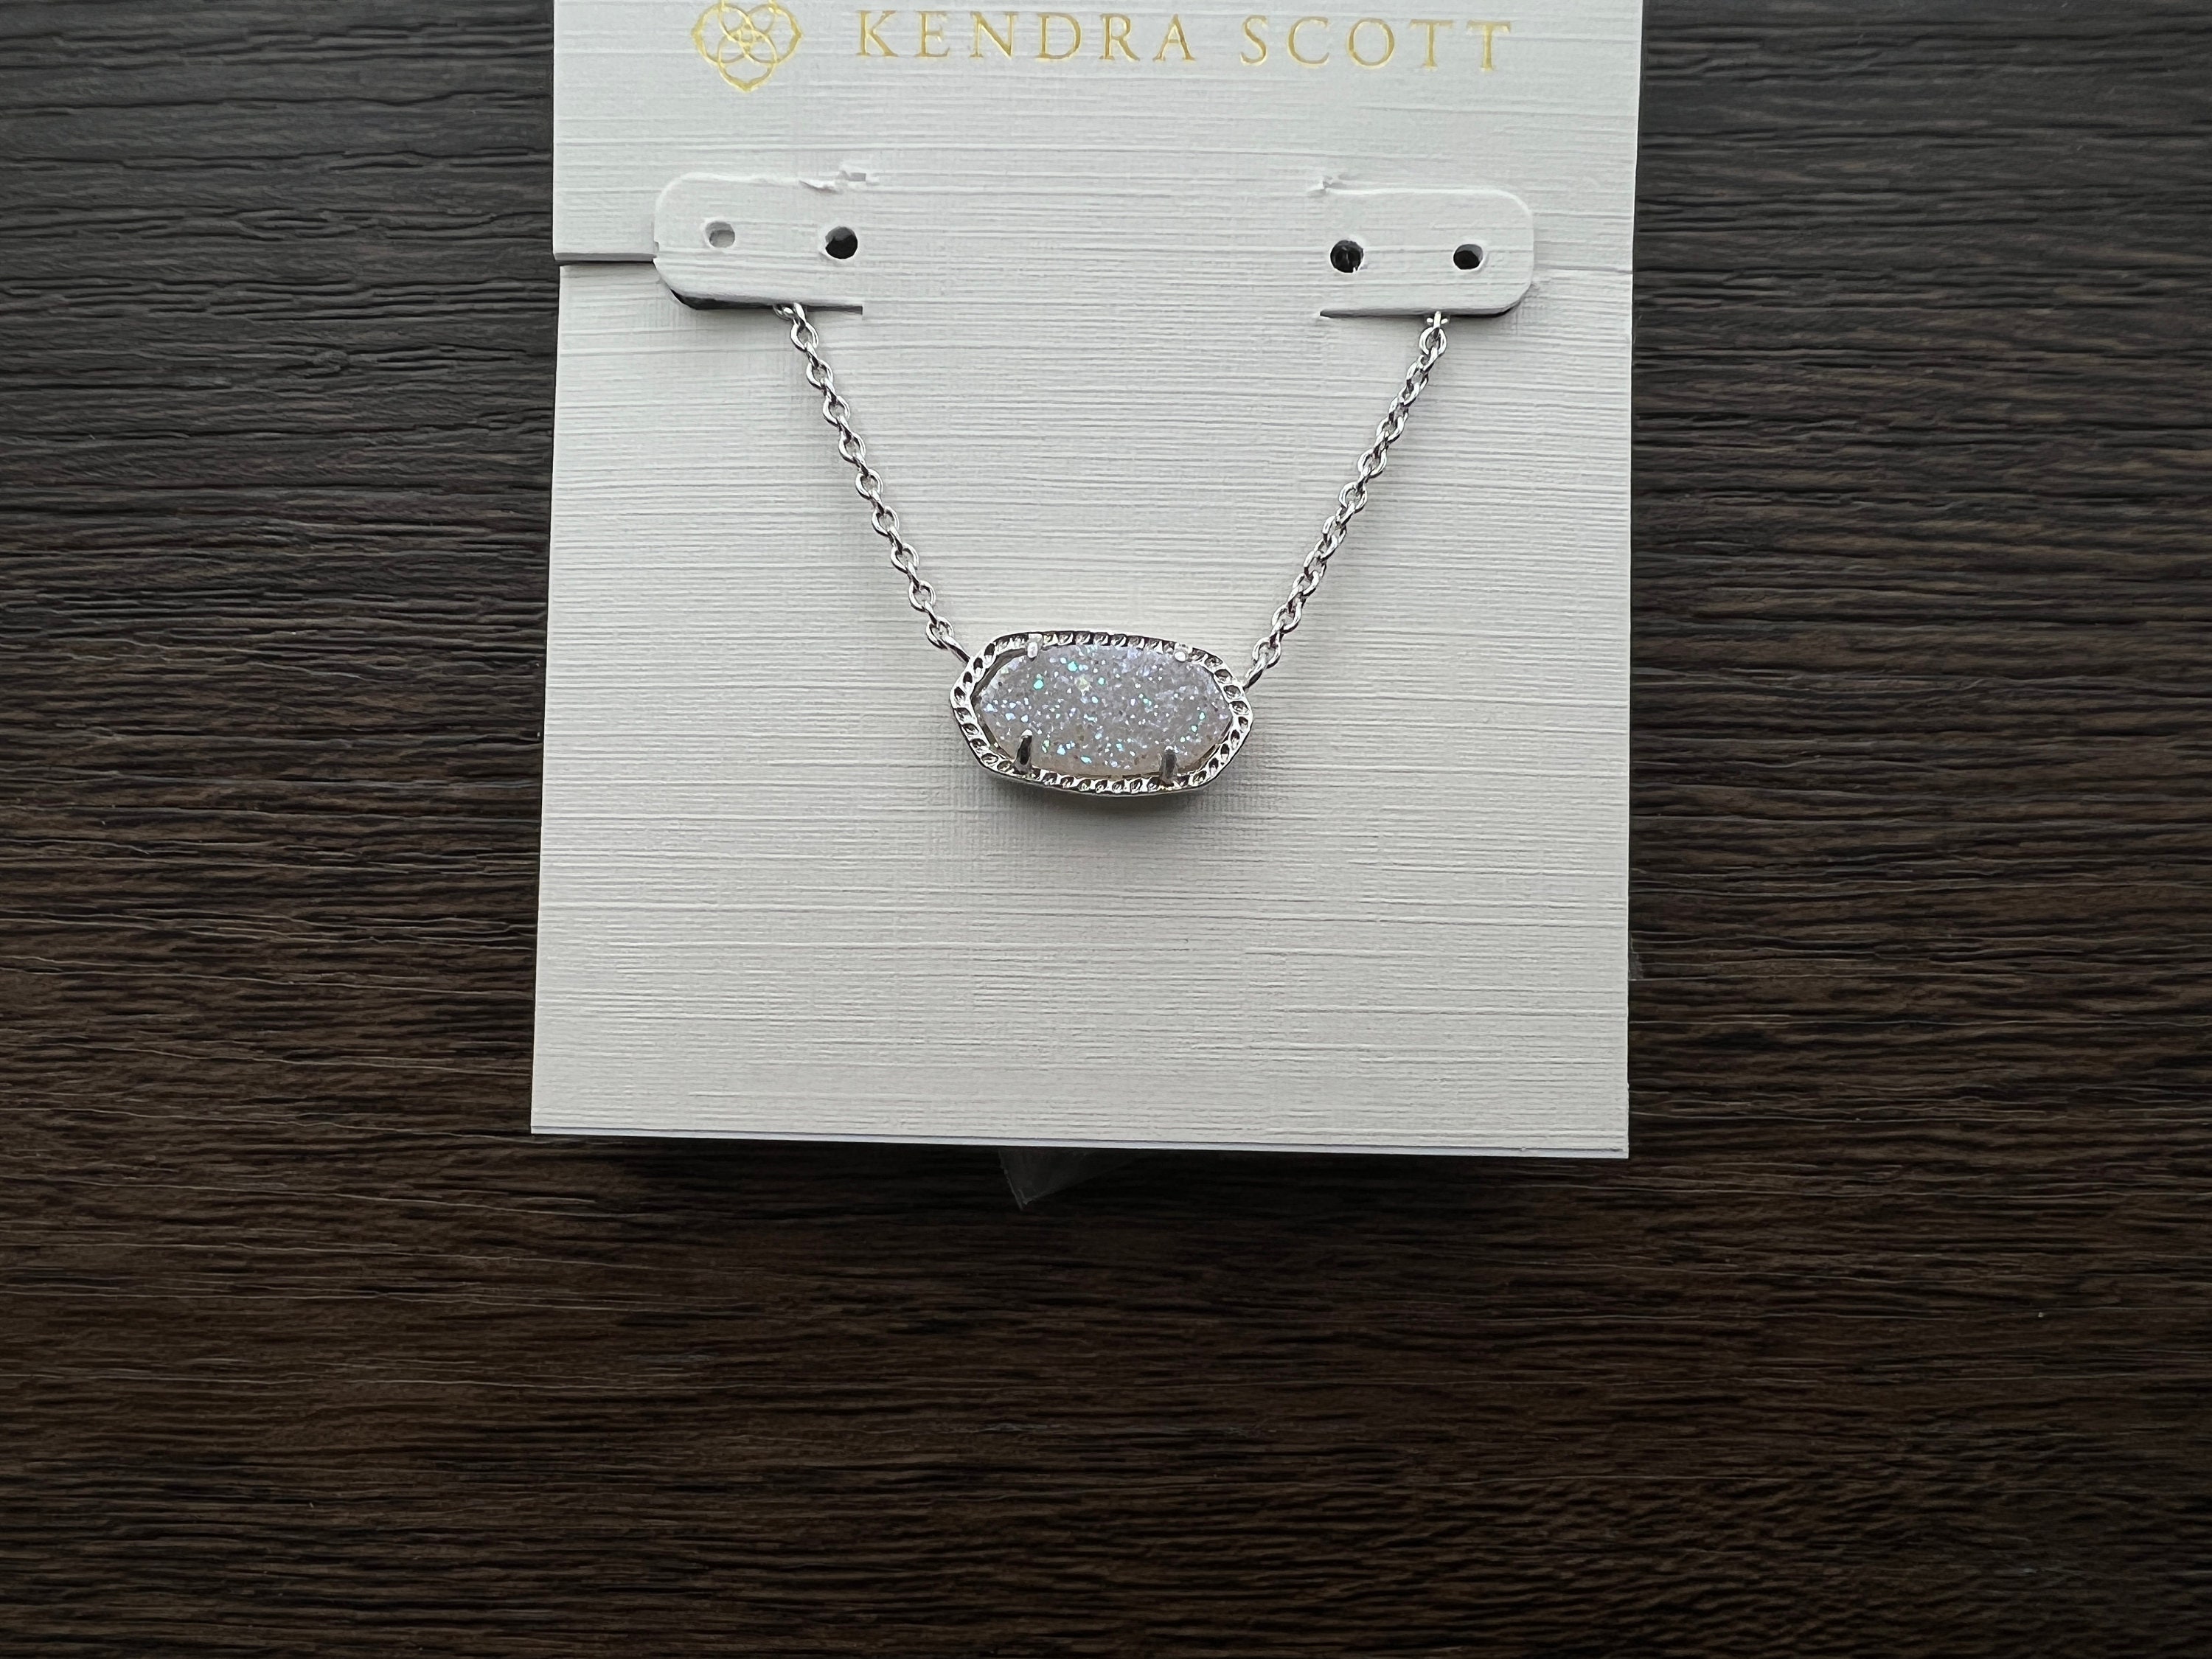 Kendra Scott Pendants Necklace | Preppy jewelry, Jewelry accessories ideas,  Jewelry